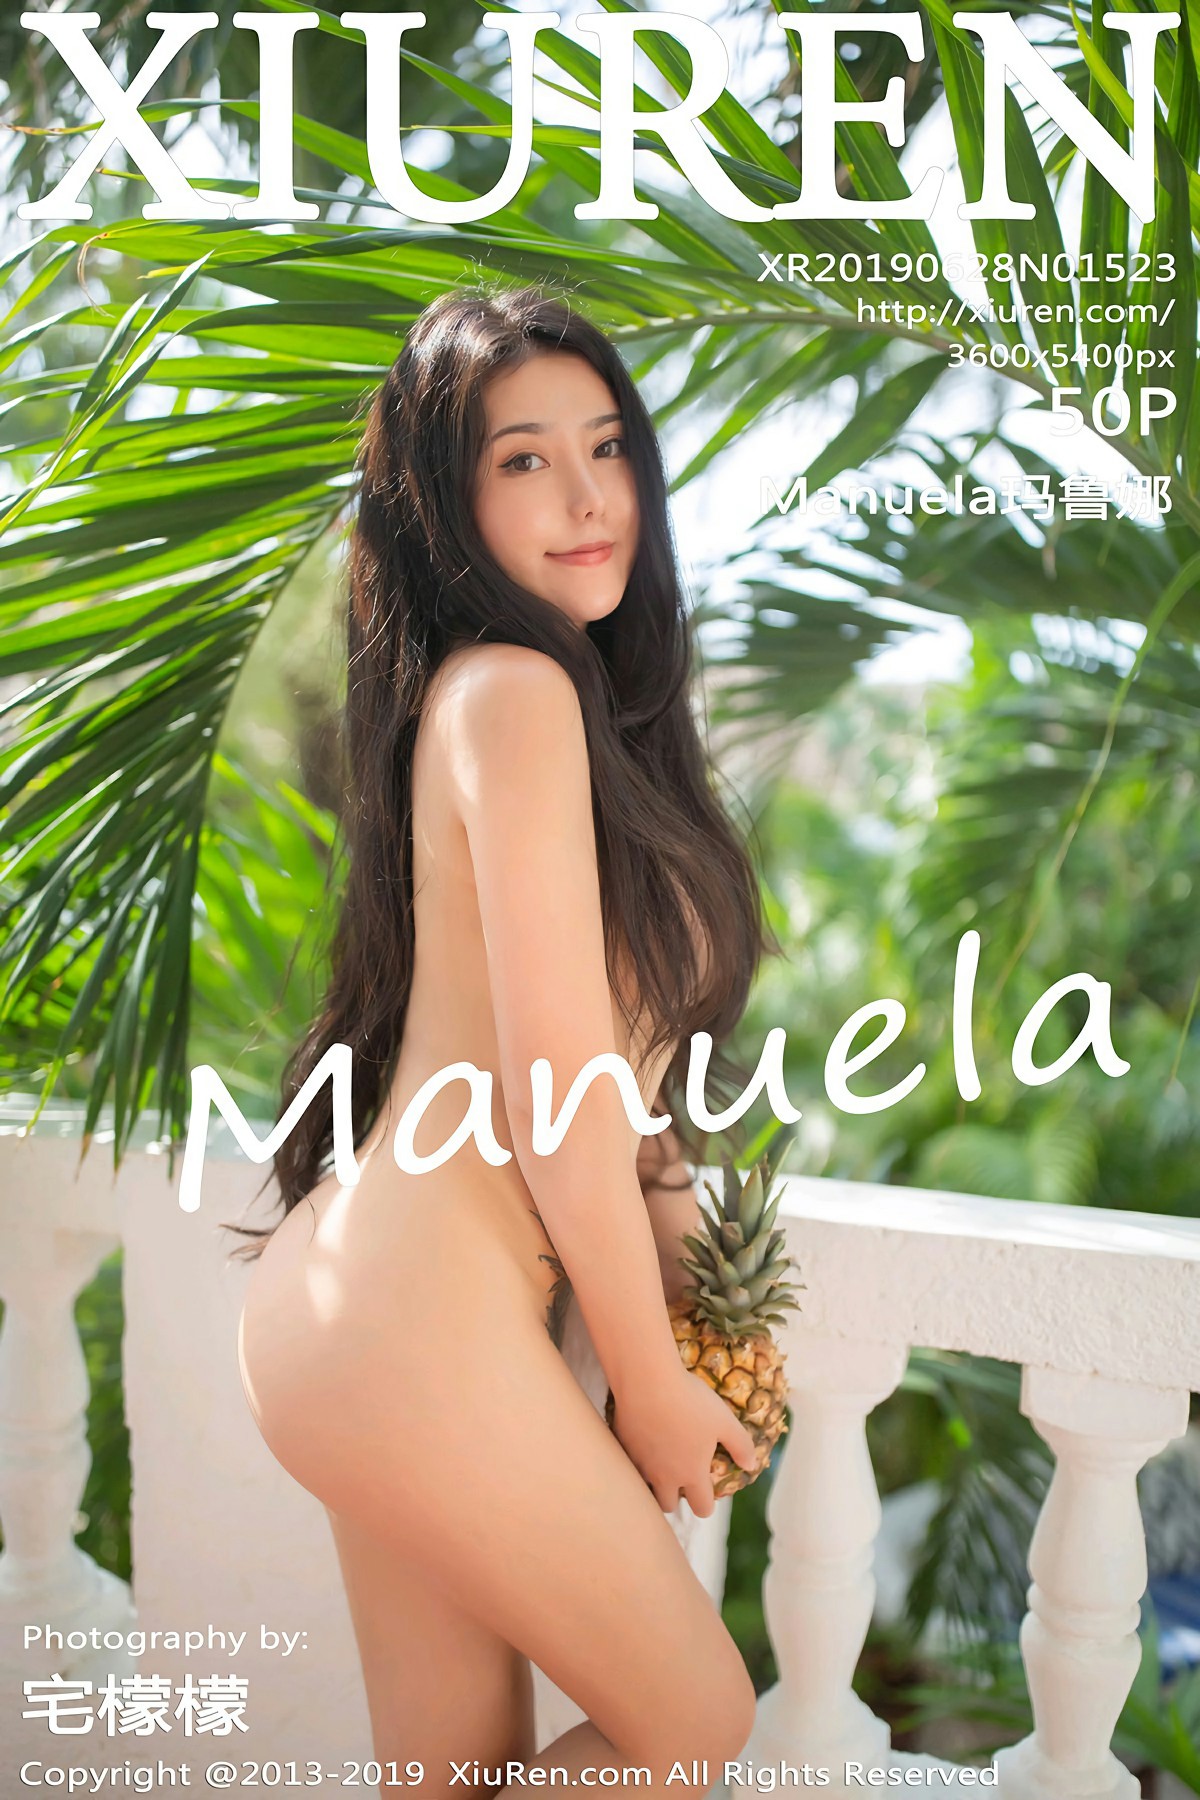 [XiuRen秀人网]2019.06.28 No.1523 Manuela玛鲁娜